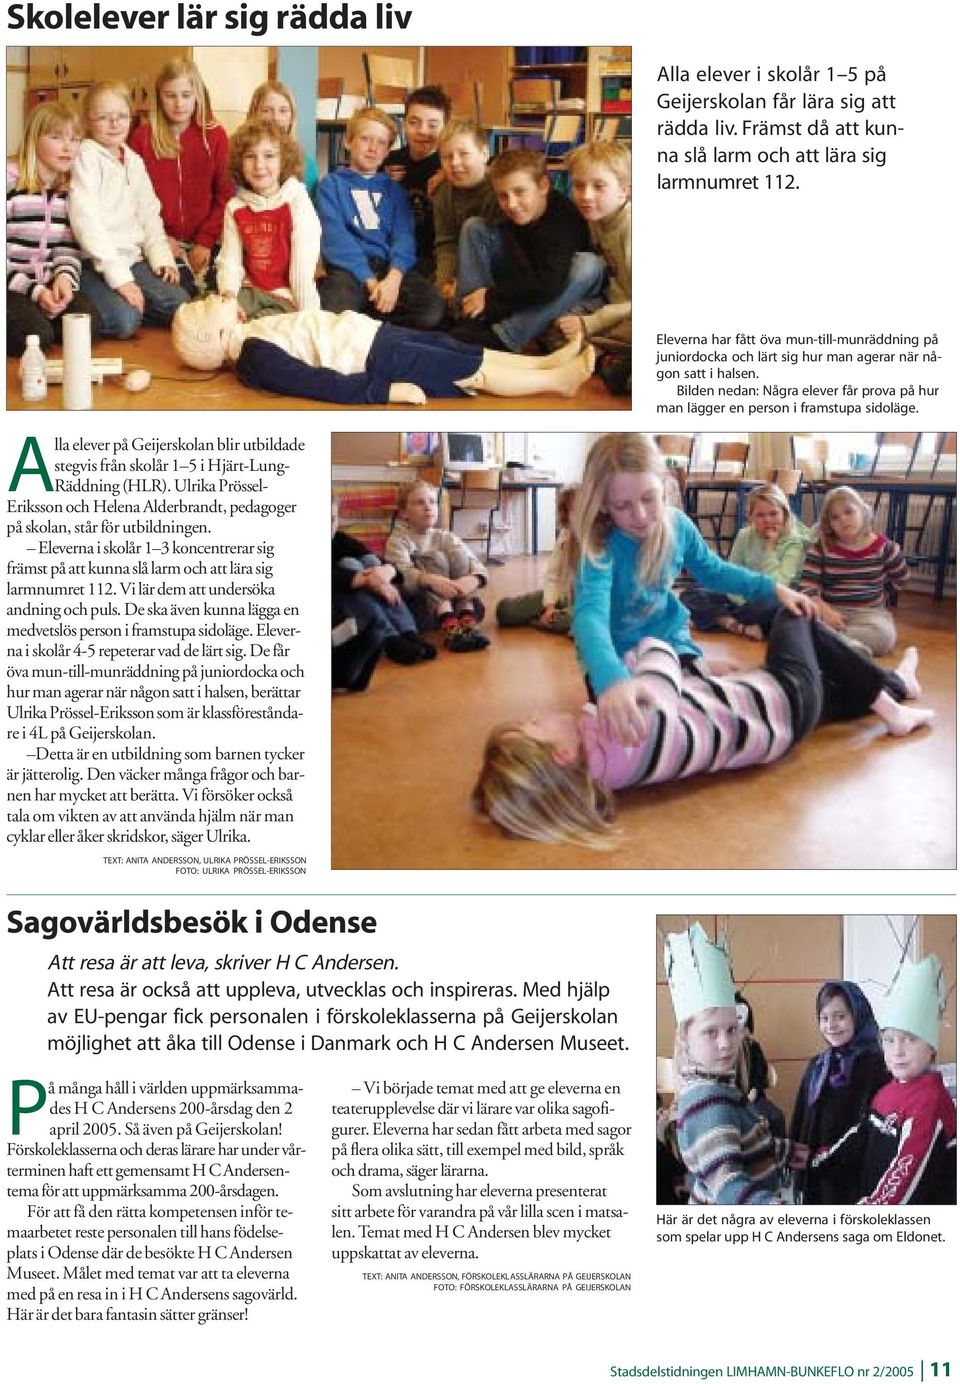 Alla elever på Geijerskolan blir utbildade stegvis från skolår 1 5 i Hjärt-Lung- Räddning (HLR). Ulrika Prössel- Eriksson och Helena Alderbrandt, pedagoger på skolan, står för utbildningen.